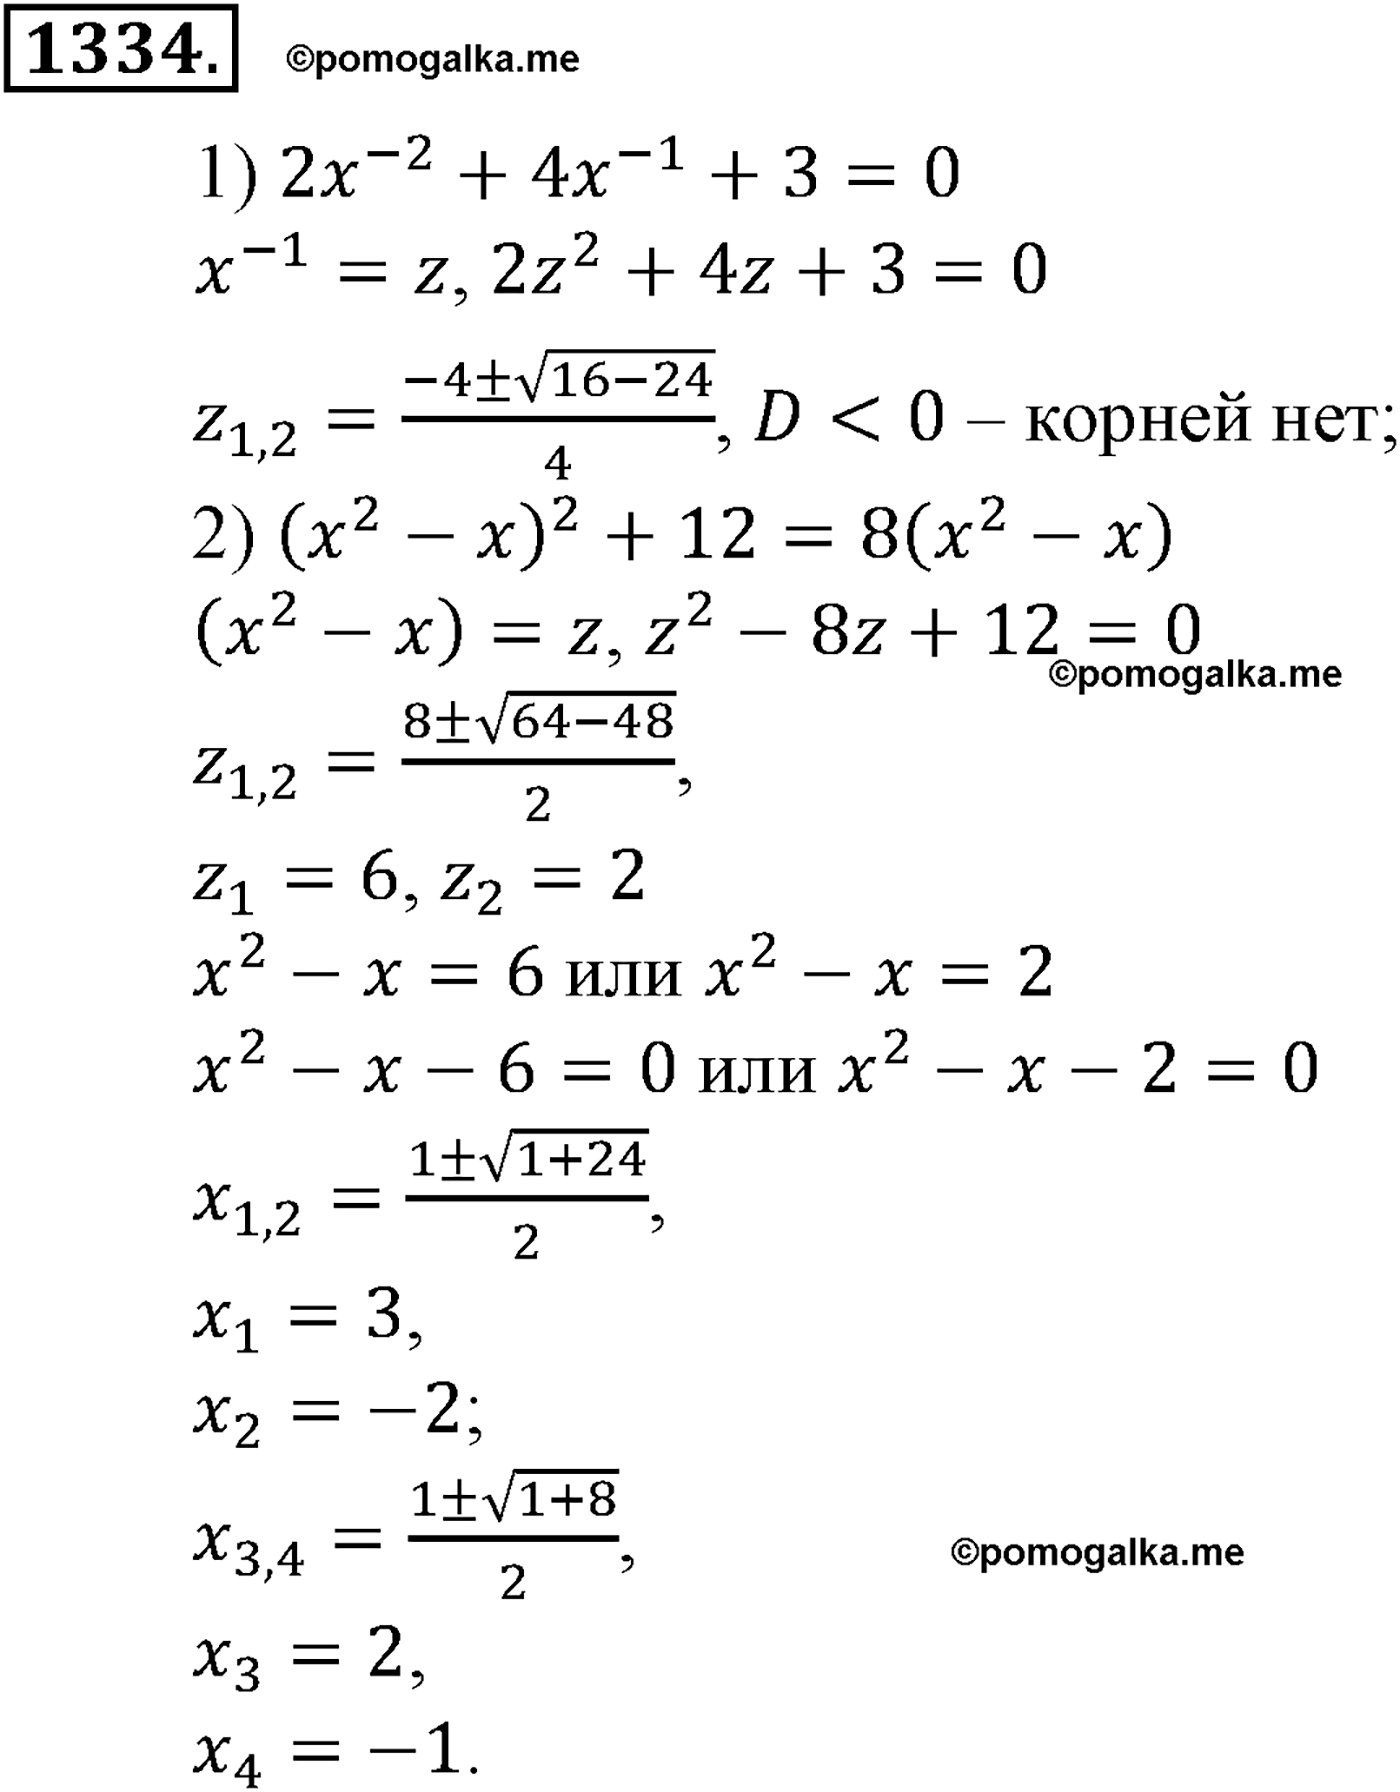 разбор задачи №1334 по алгебре за 10-11 класс из учебника Алимова, Колягина